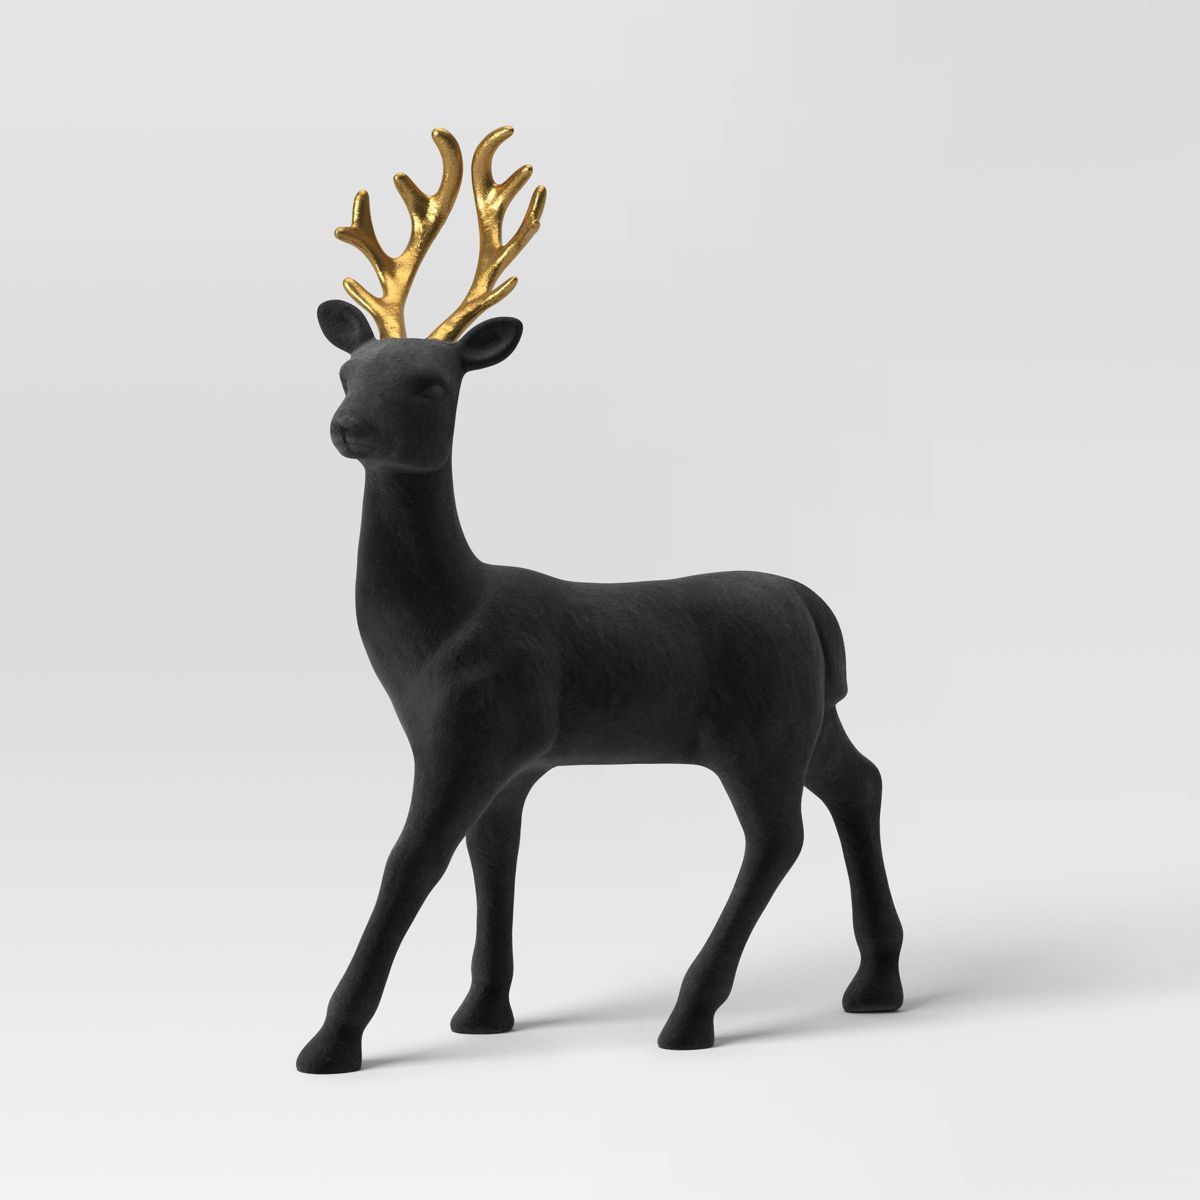 Flocked Standing Deer Animal Christmas Figurine - Wondershop™ Black/Gold | Target